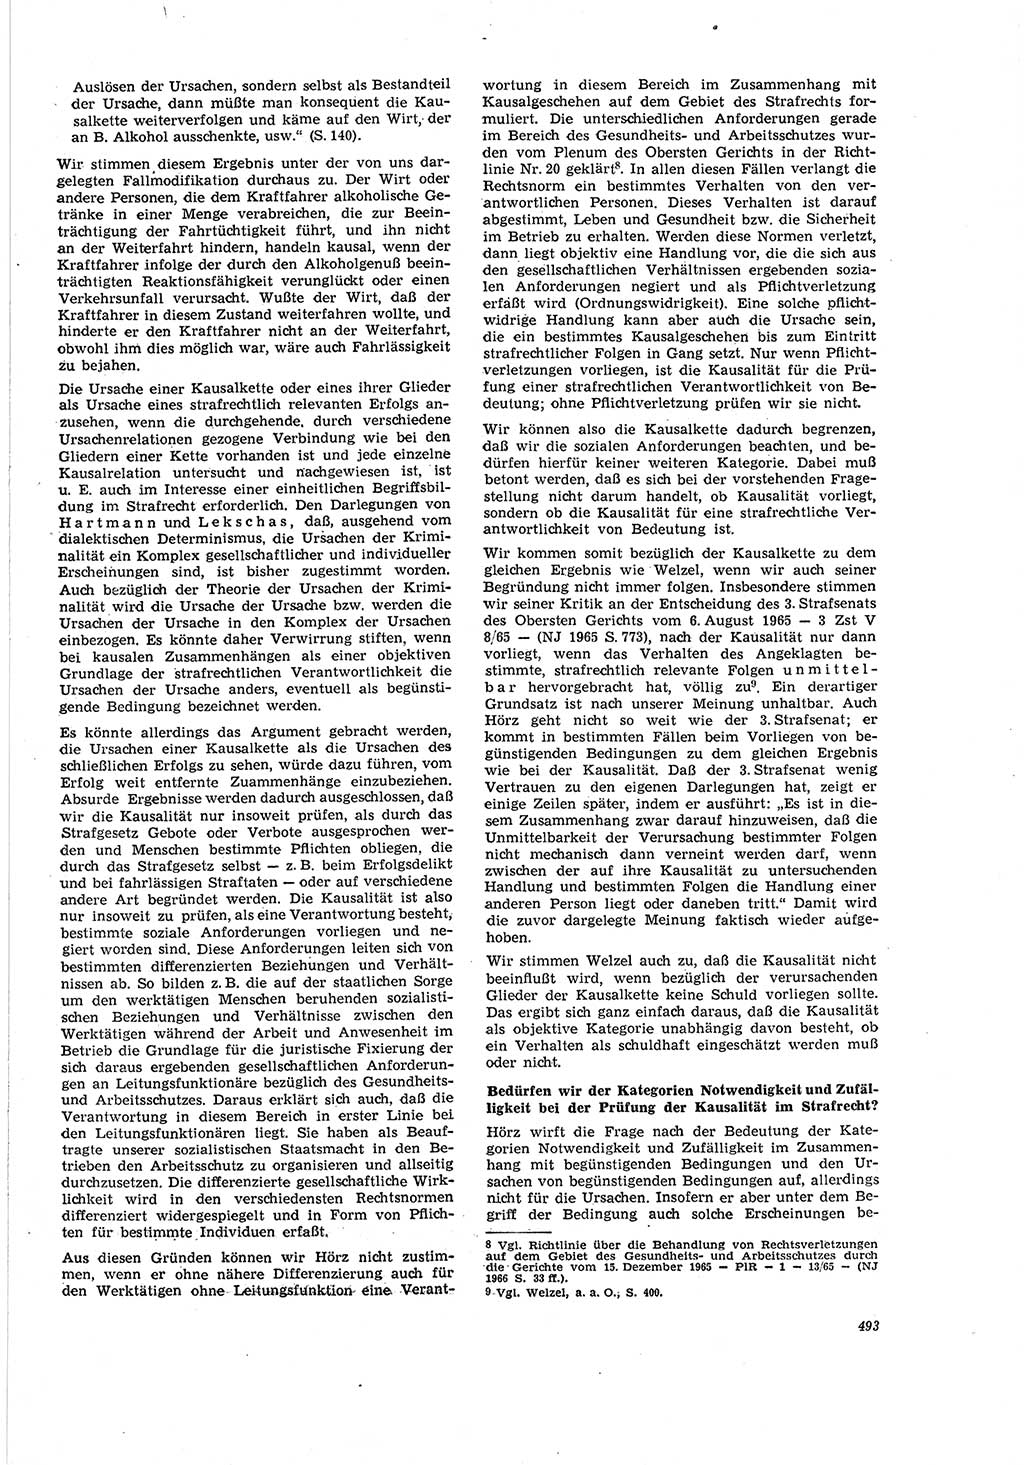 Neue Justiz (NJ), Zeitschrift für Recht und Rechtswissenschaft [Deutsche Demokratische Republik (DDR)], 20. Jahrgang 1966, Seite 493 (NJ DDR 1966, S. 493)